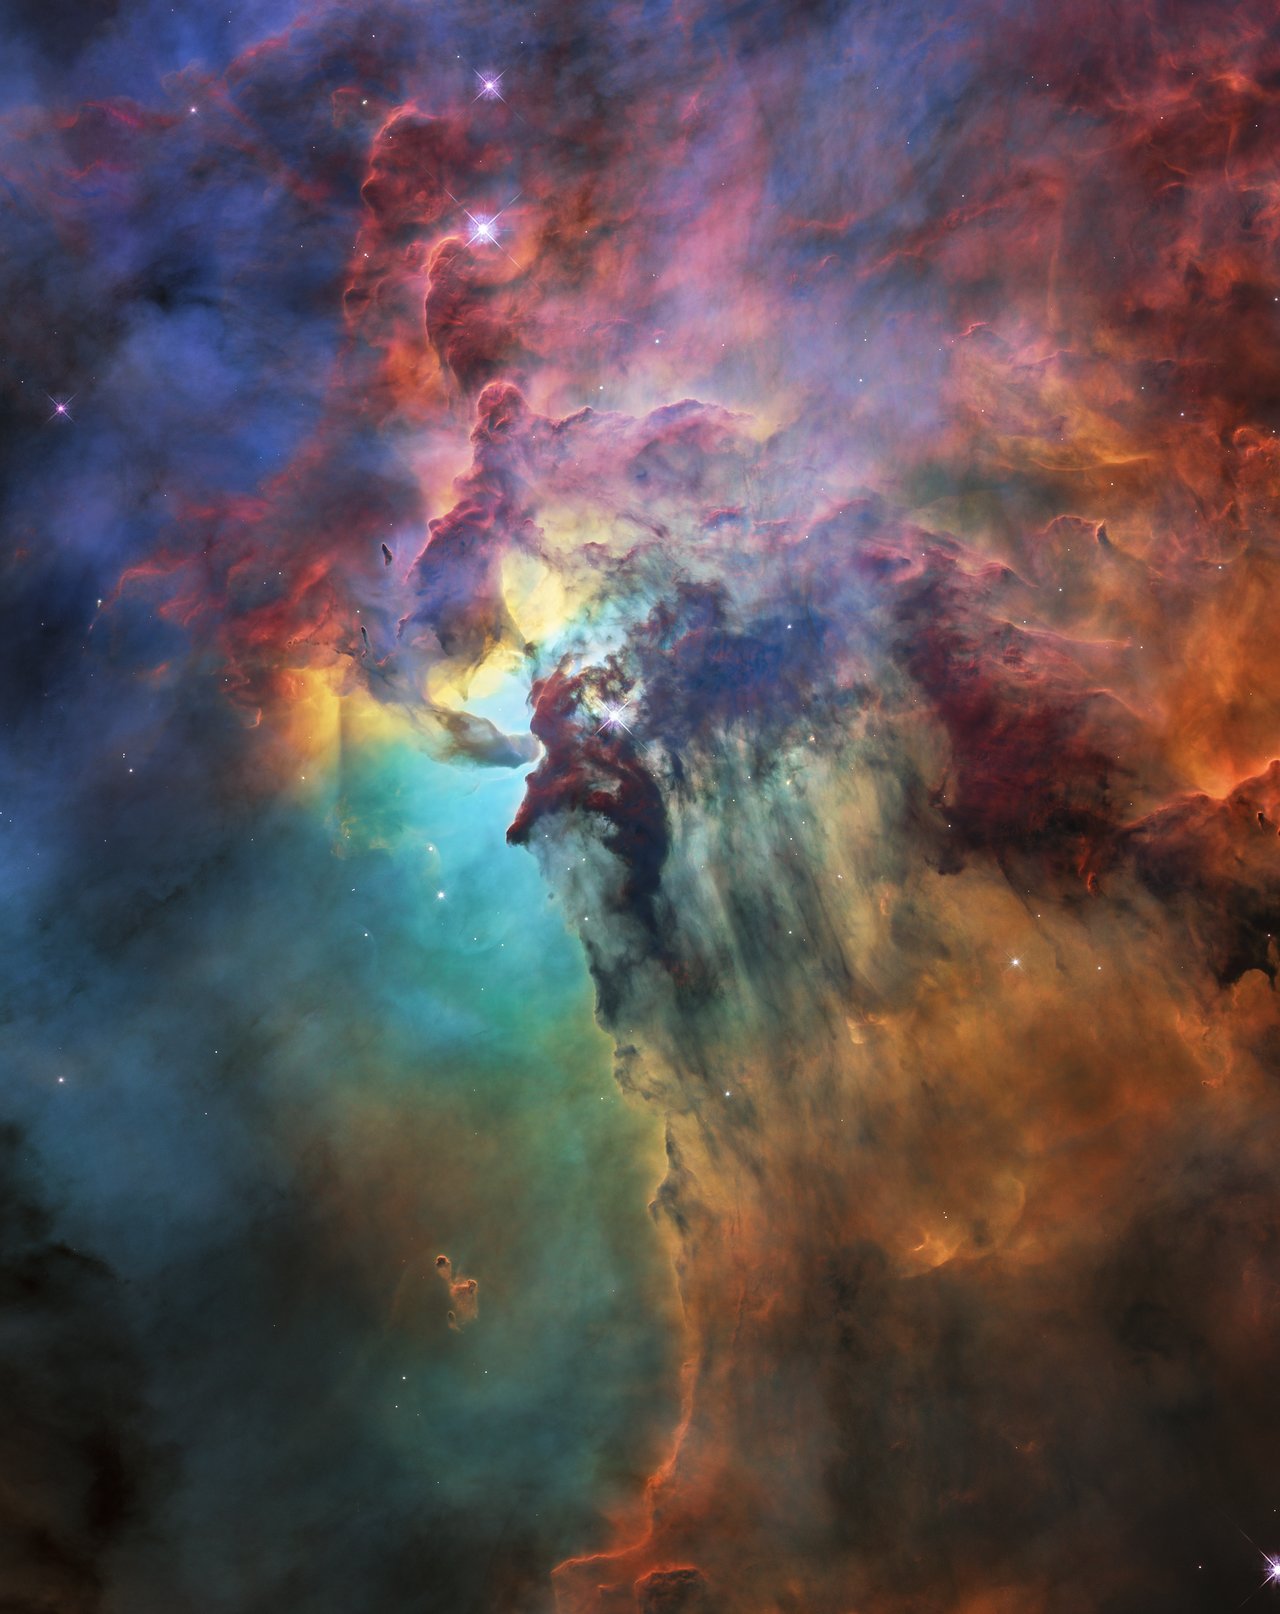 La nebulosa Laguna nella costellazione del Sagittario, distante 4.000 anni luce circa, ripresa da Hubble Space Telescope nel 2018 Credit: NASA, ESA, STScI https://spacetelescope.org/images/heic1808a/